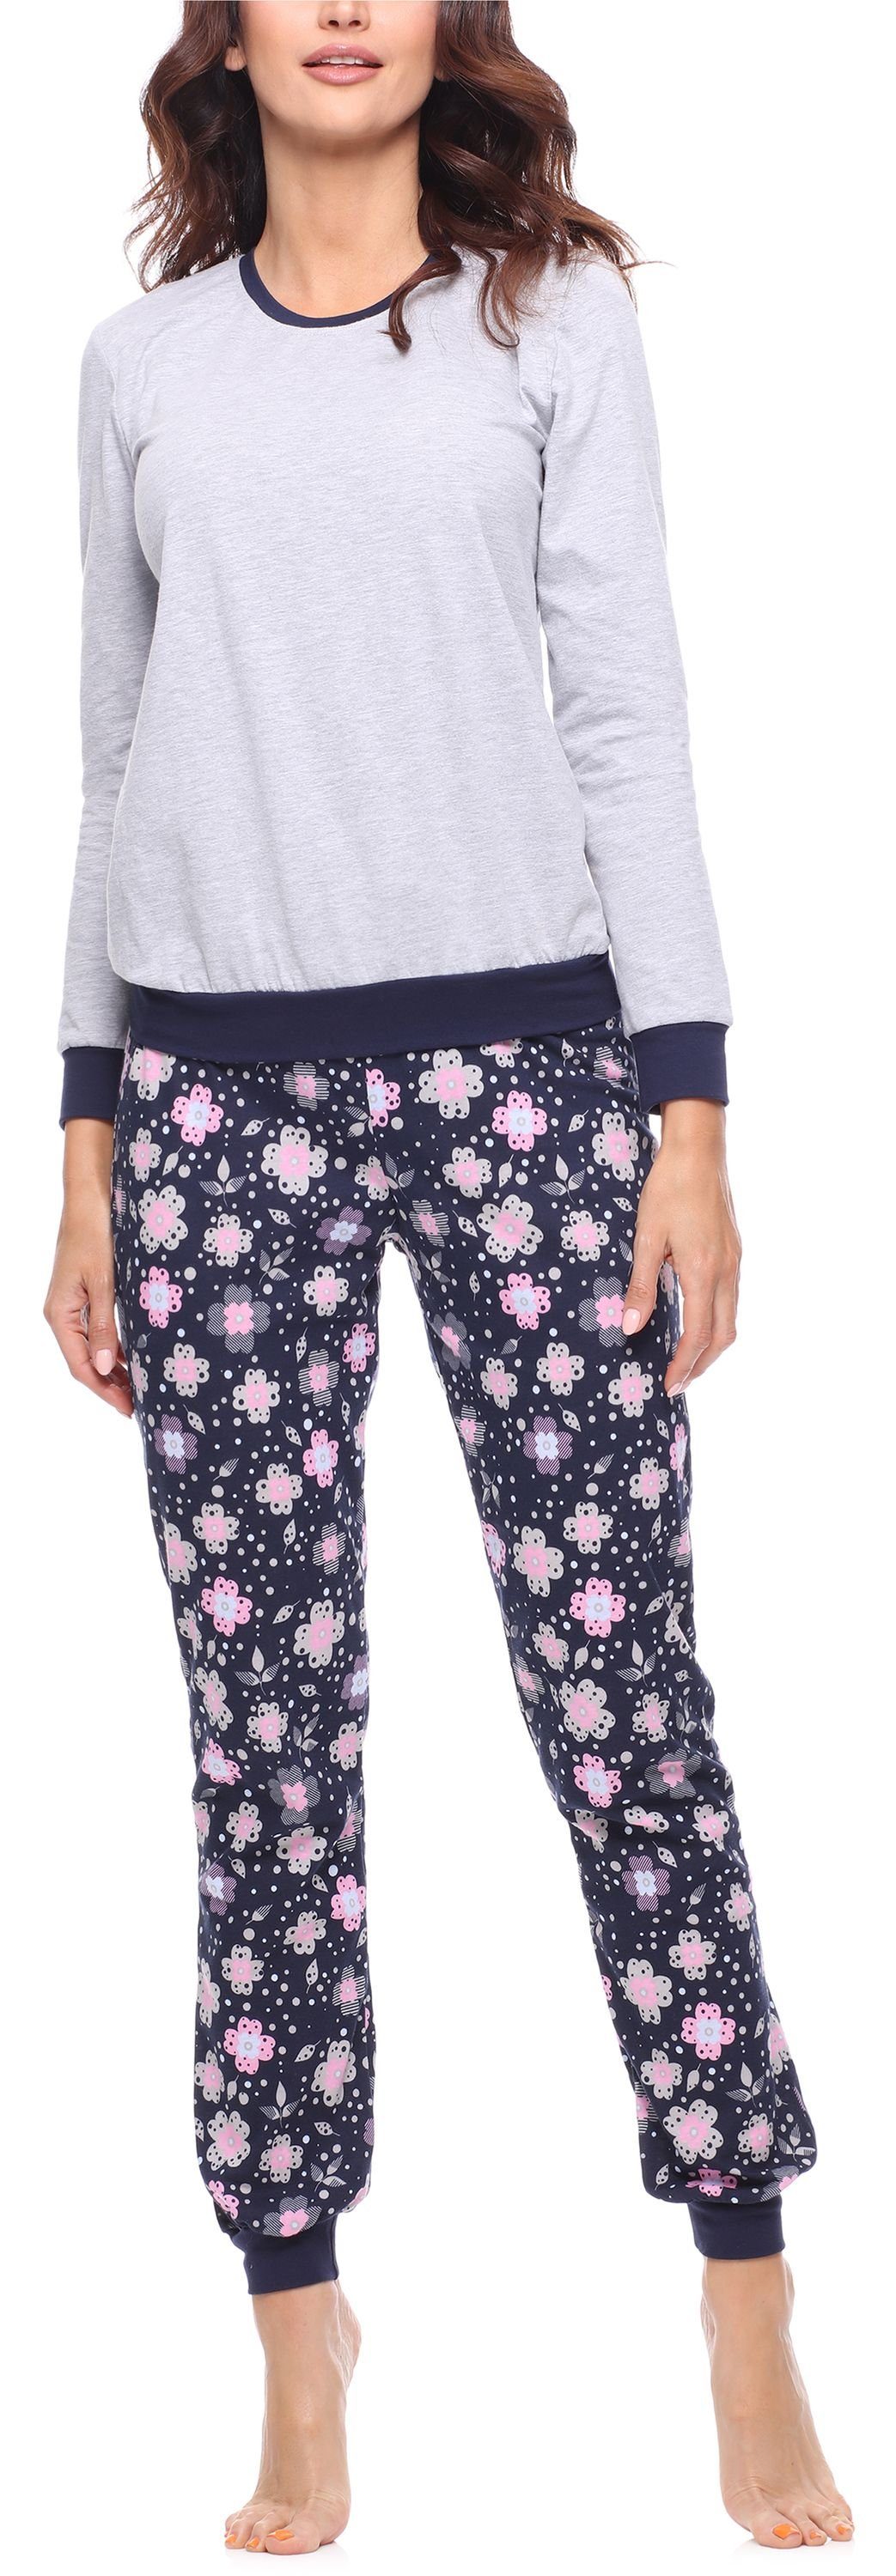 Merry Style Schlafanzug Damen Schlafanzug Zweiteiler Pyjama lang bunt mit Muster MS10-268 Melange/Blumen